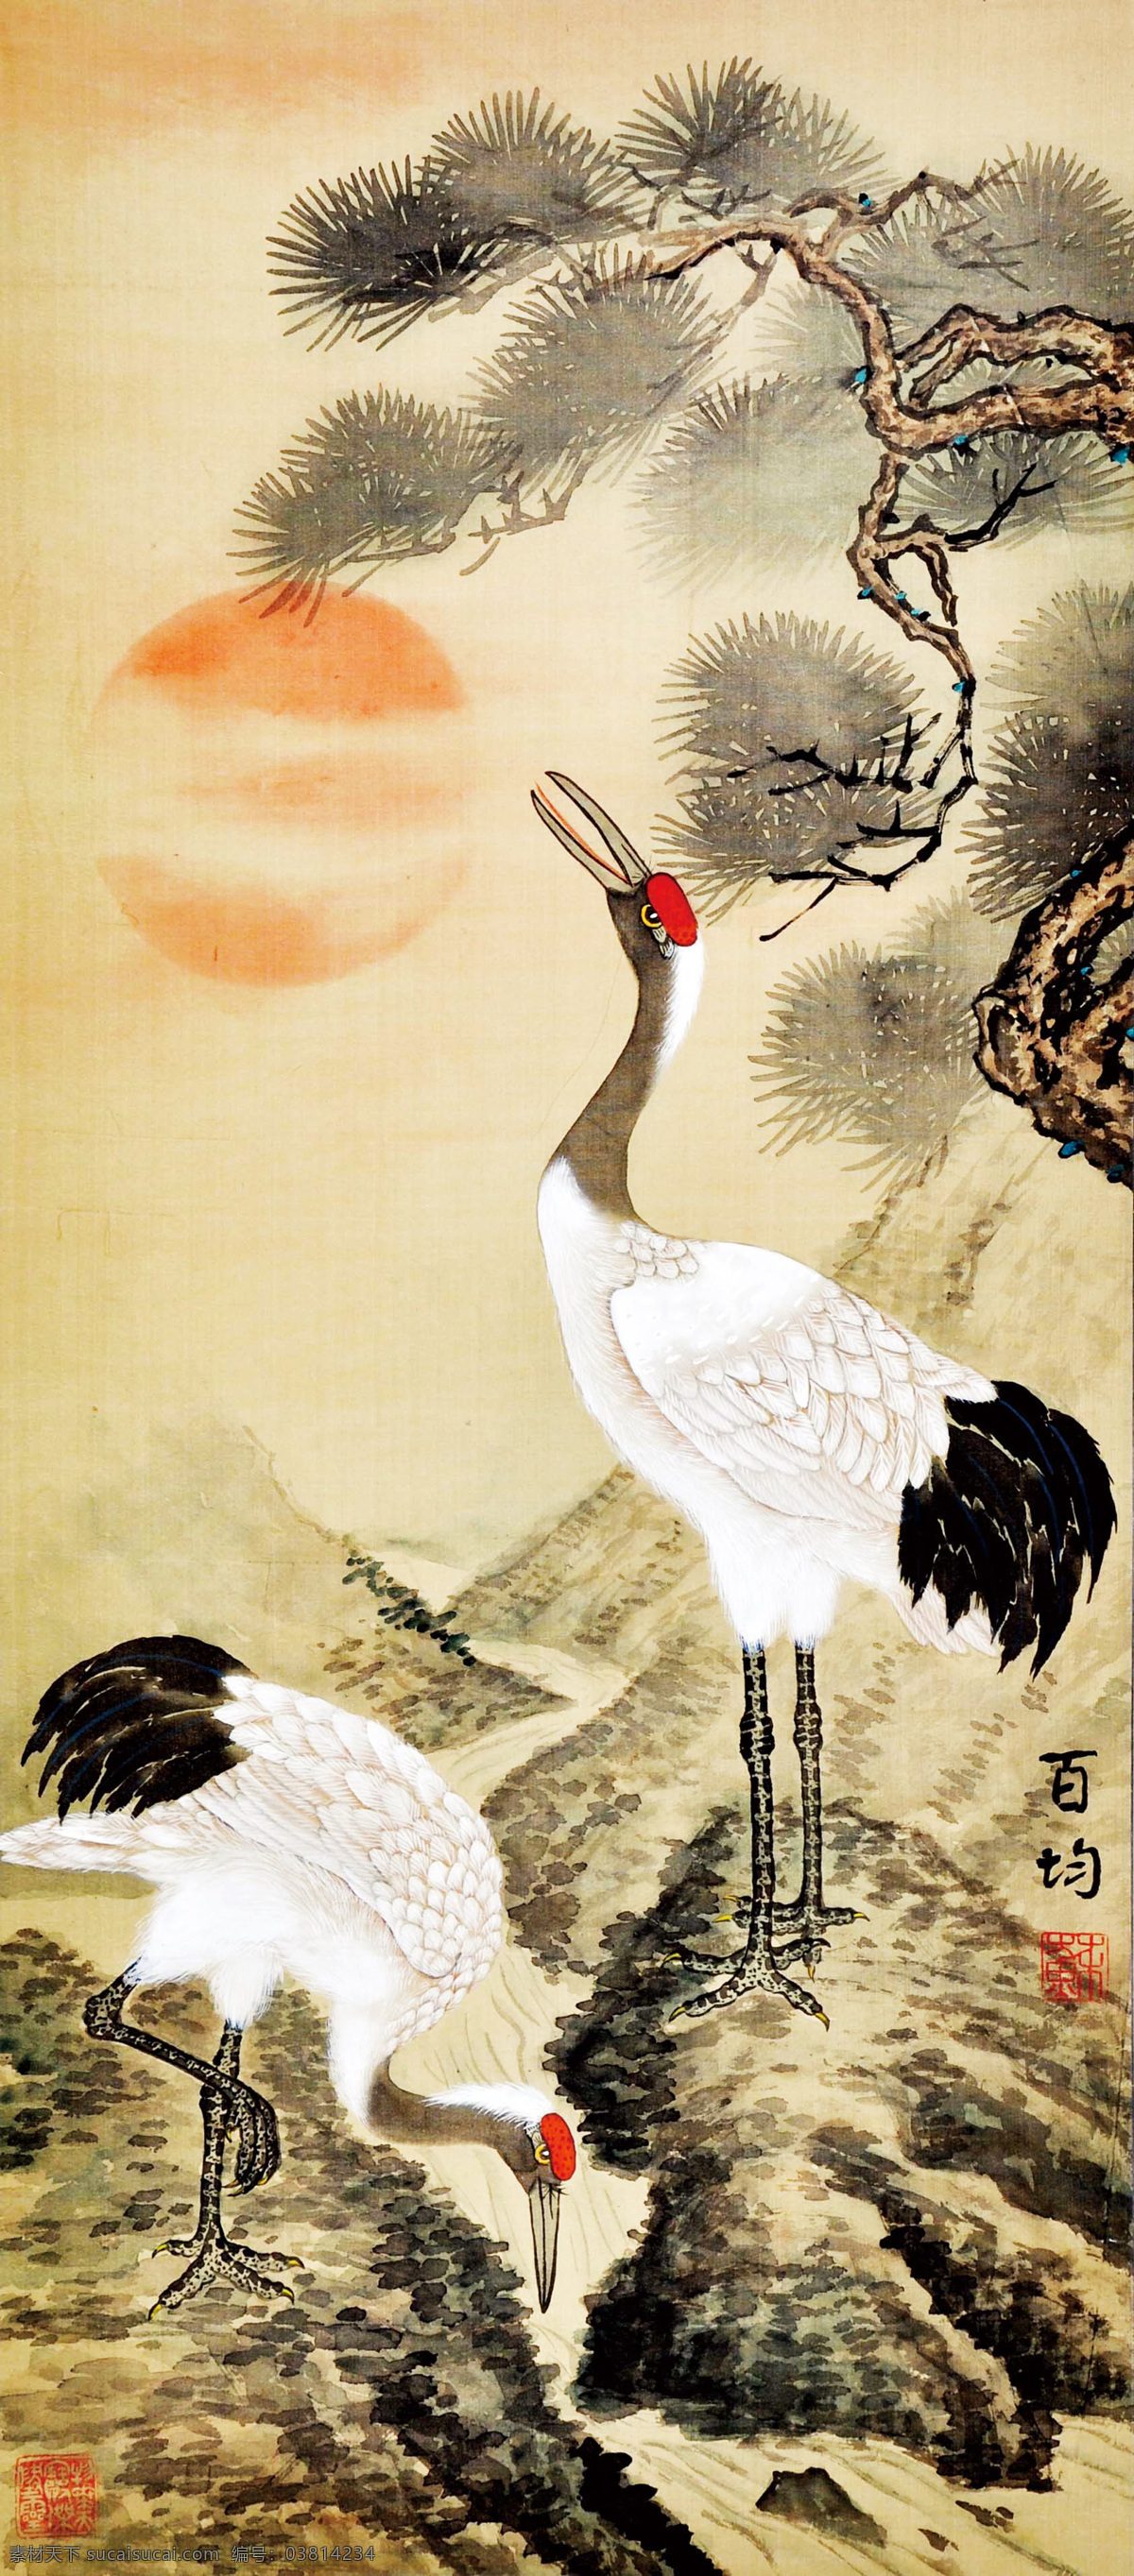 苏百钧 松鹤图 写意 水墨画 国画 中国画 传统画 名家 绘画 艺术 文化艺术 绘画书法